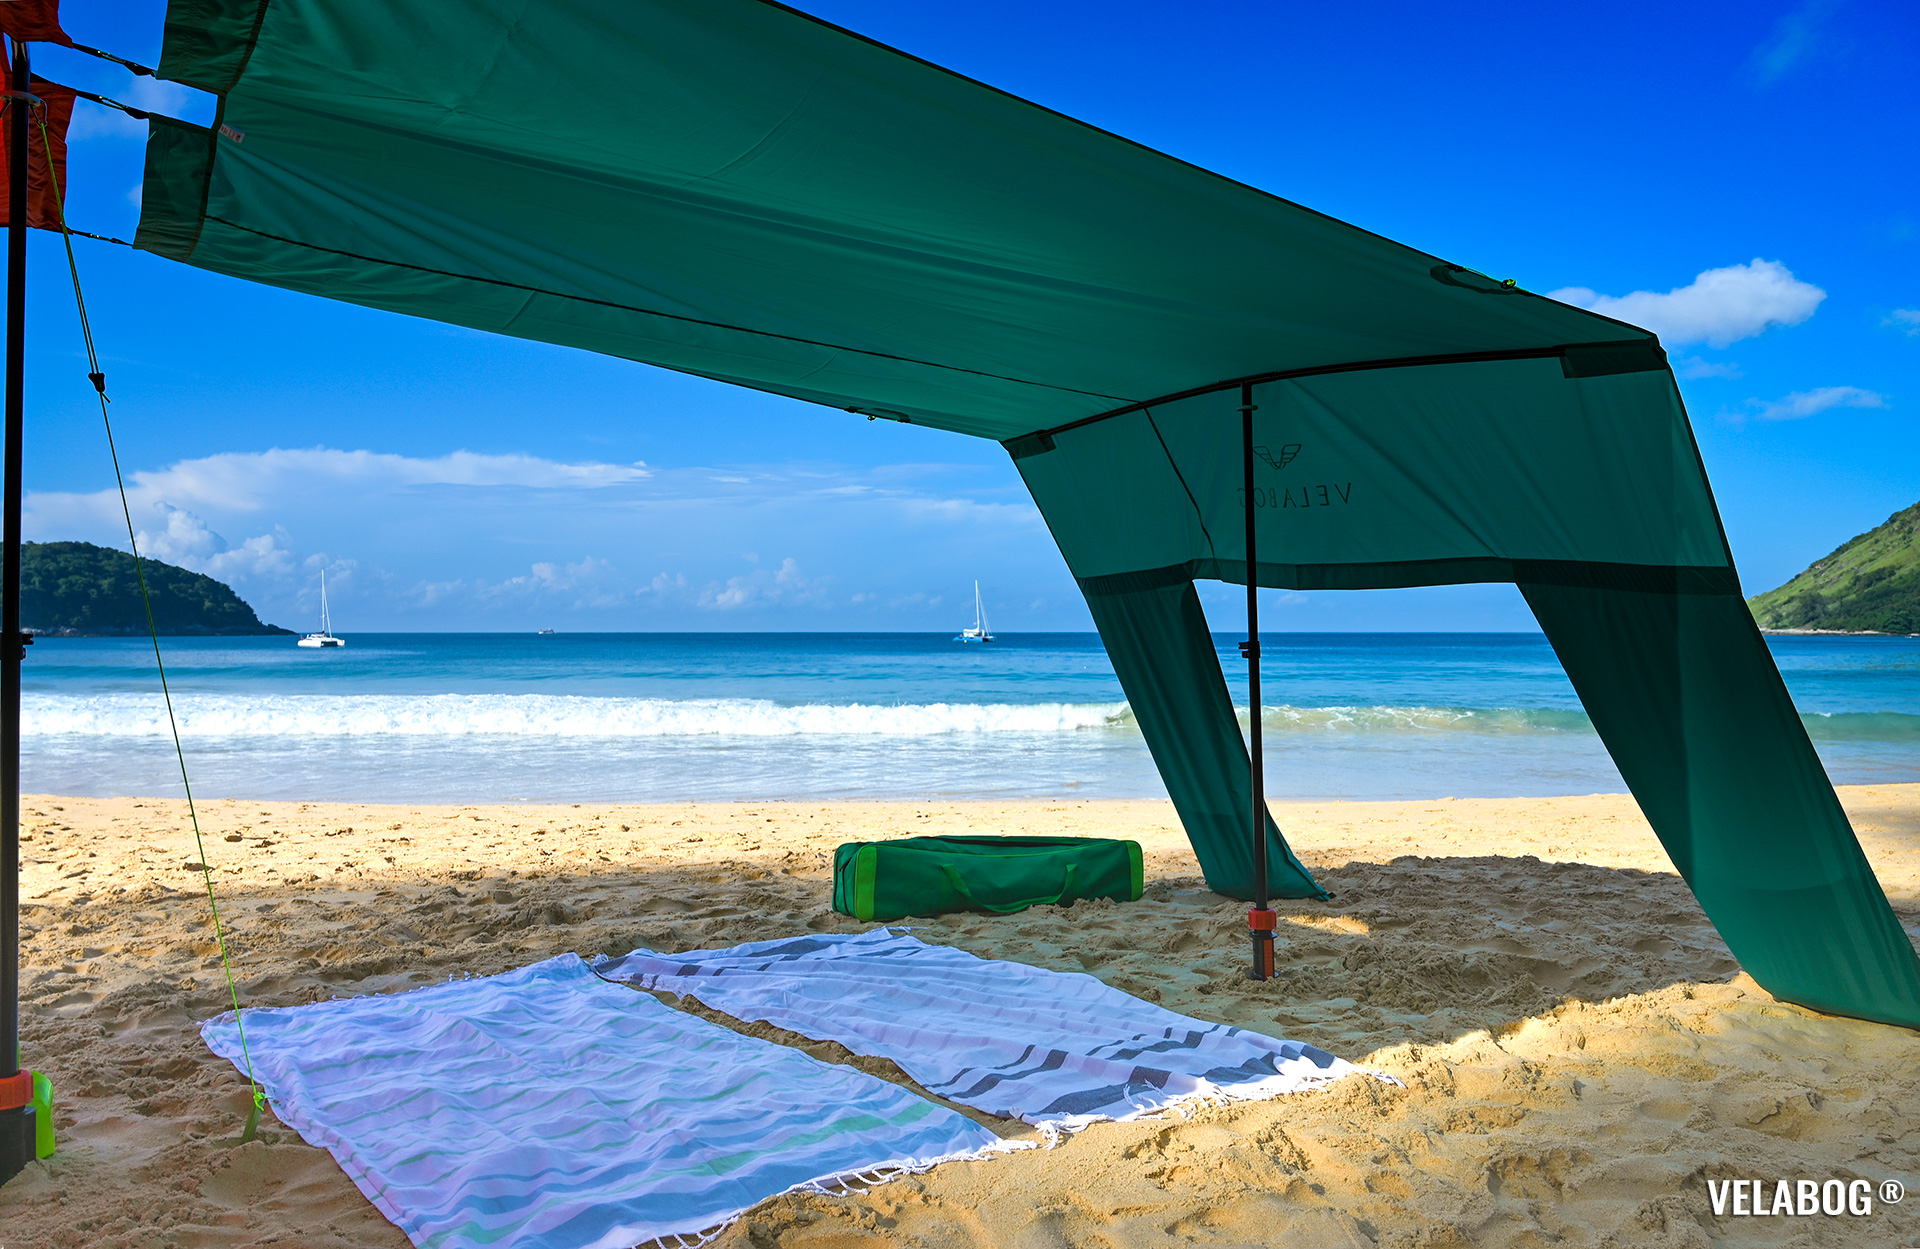 Комбинация двух солнечных парусов Velabog «Breeze». Укрытие от солнца на пляже с щедрой тенью для всей семьи. Вариант установки с расширяющим набором - безветренно или слабый ветер. Детали.